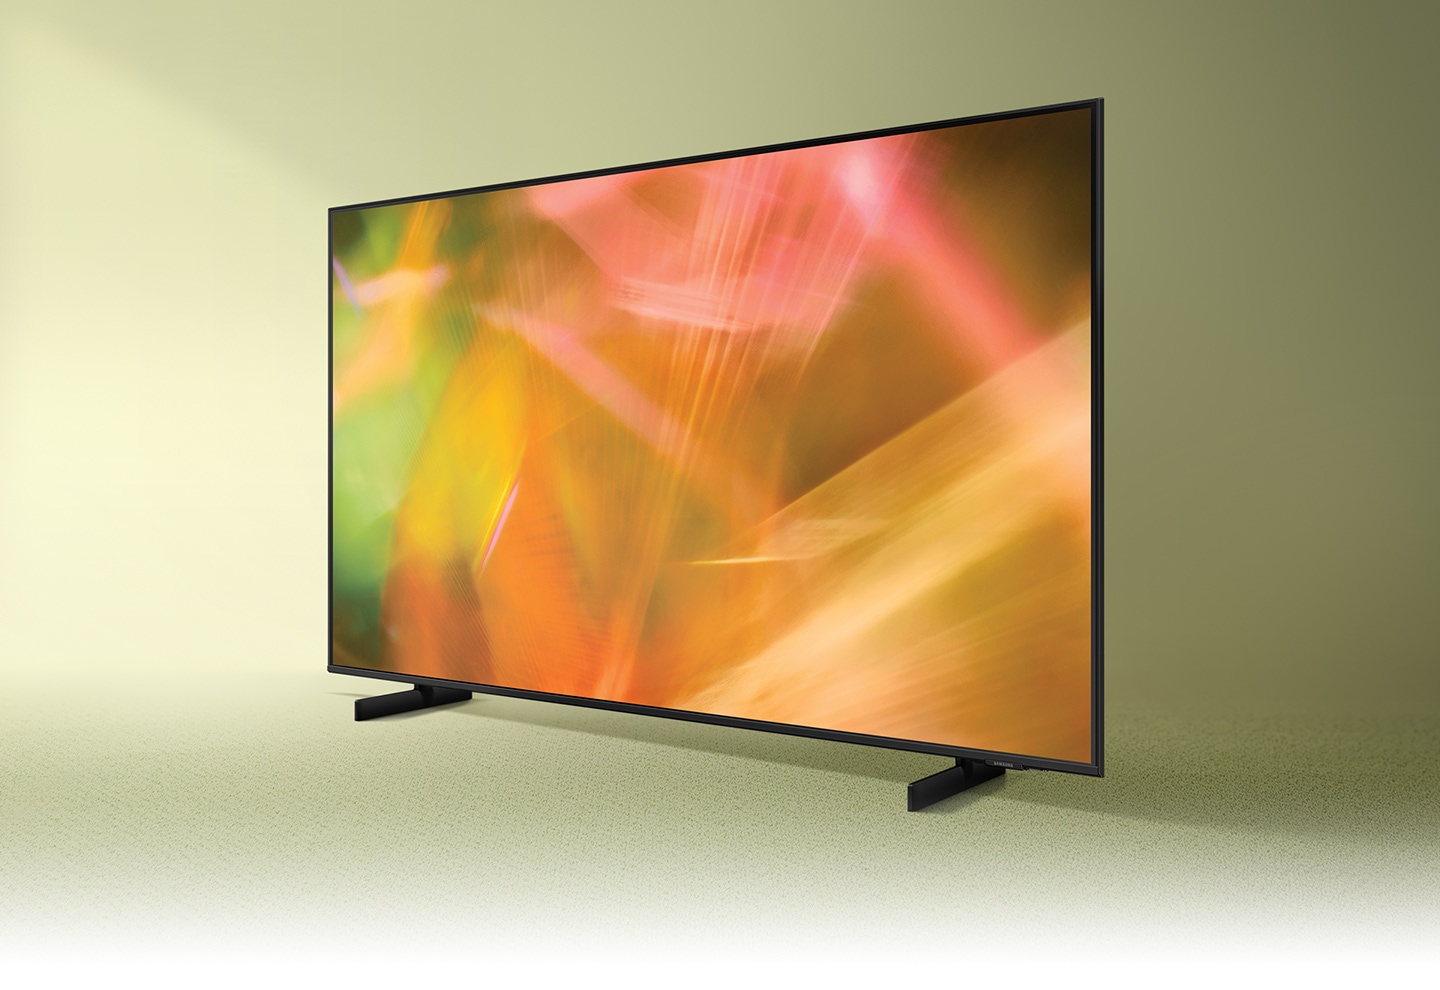 SMART TV SAMSUNG UN32T4300APCZE 32  HD (1366X768) LED HDR TIZEN